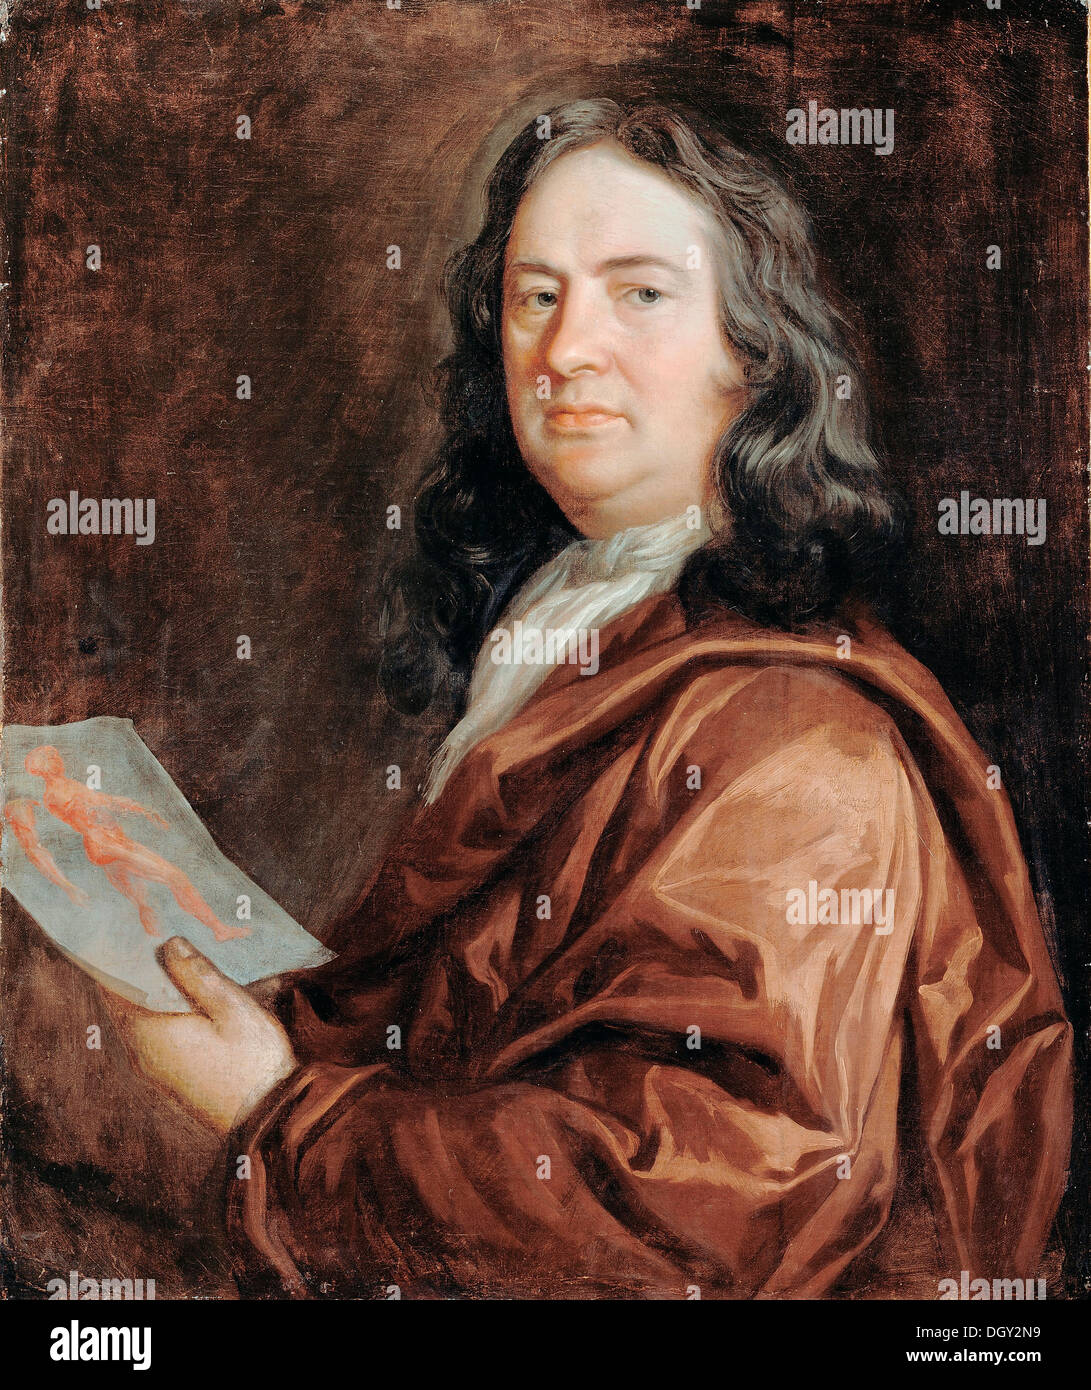 Arthur Devis, Portrait eines Arztes. Ende des 17. Jahrhunderts. Öl auf Leinwand. Dulwich Picture Gallery, London Stockfoto